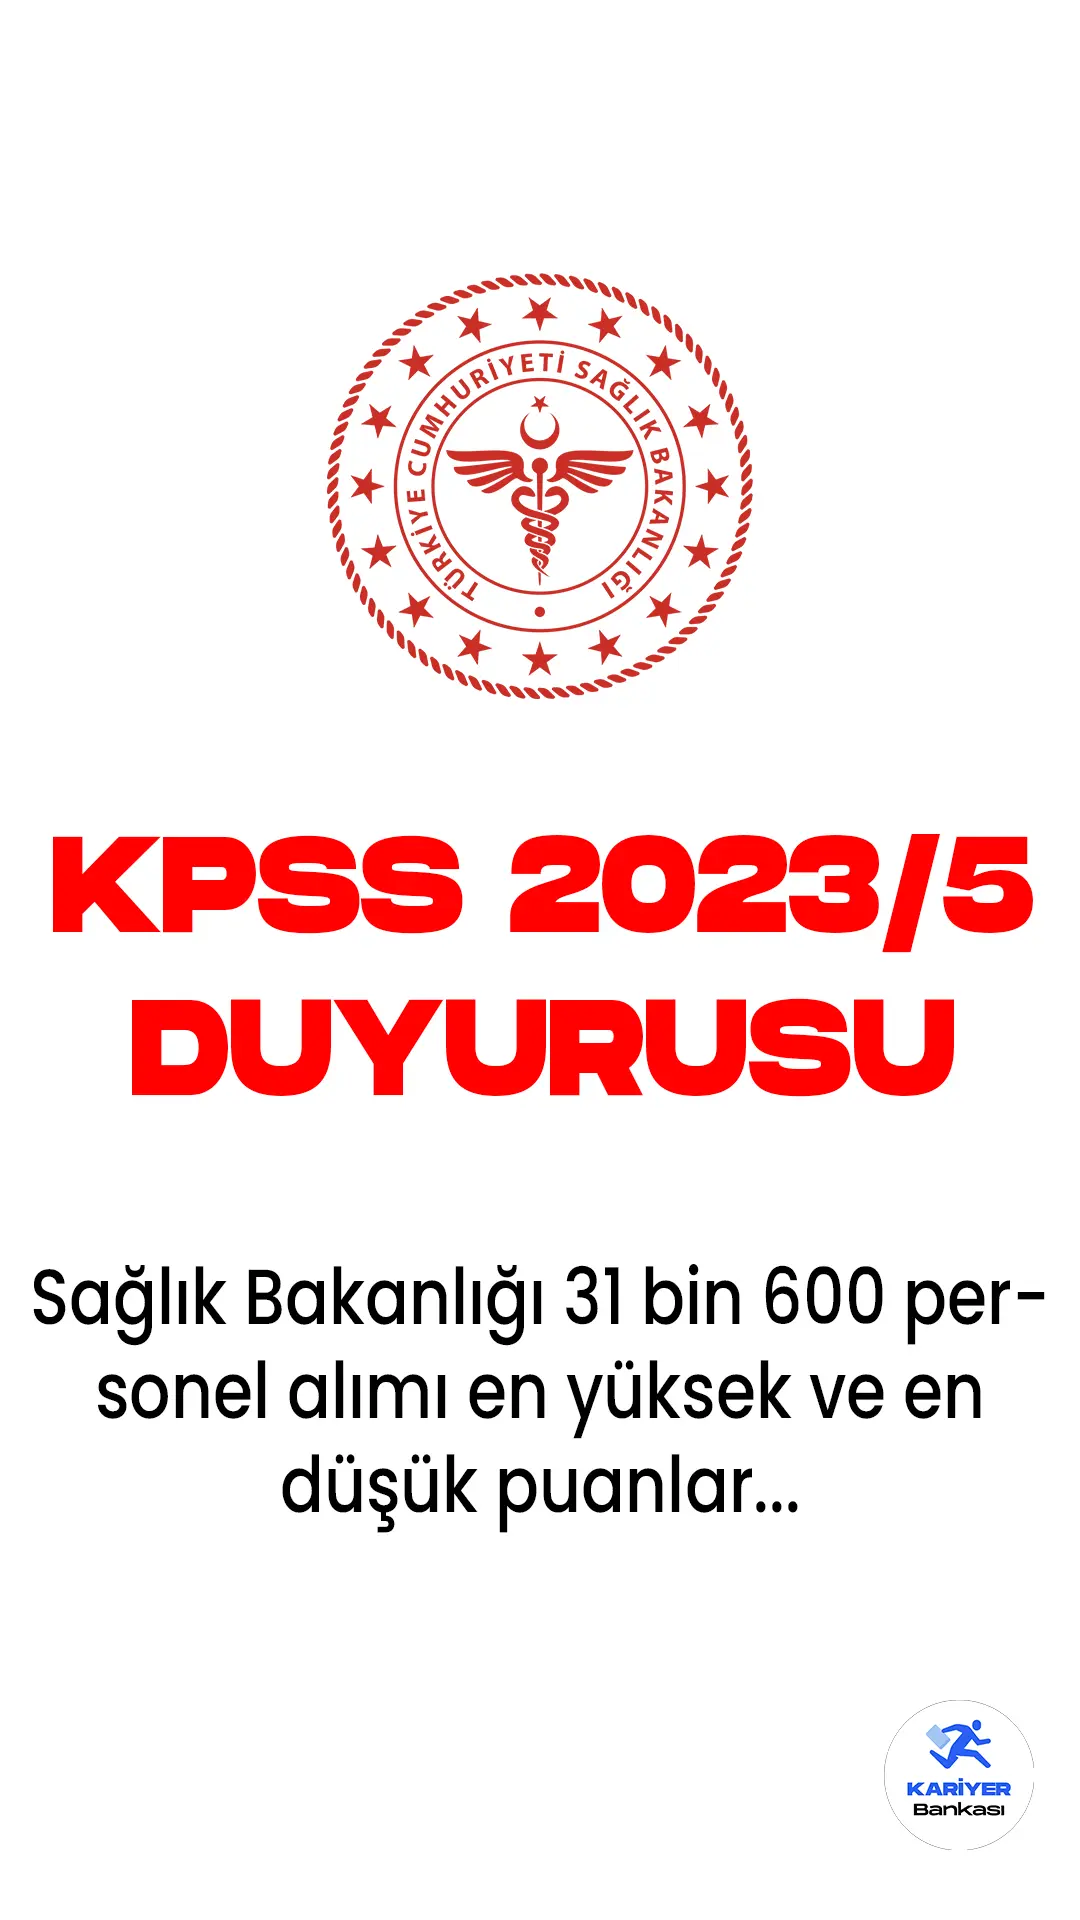 KPSS 2023/5 tercih sonuçları açıklandı.